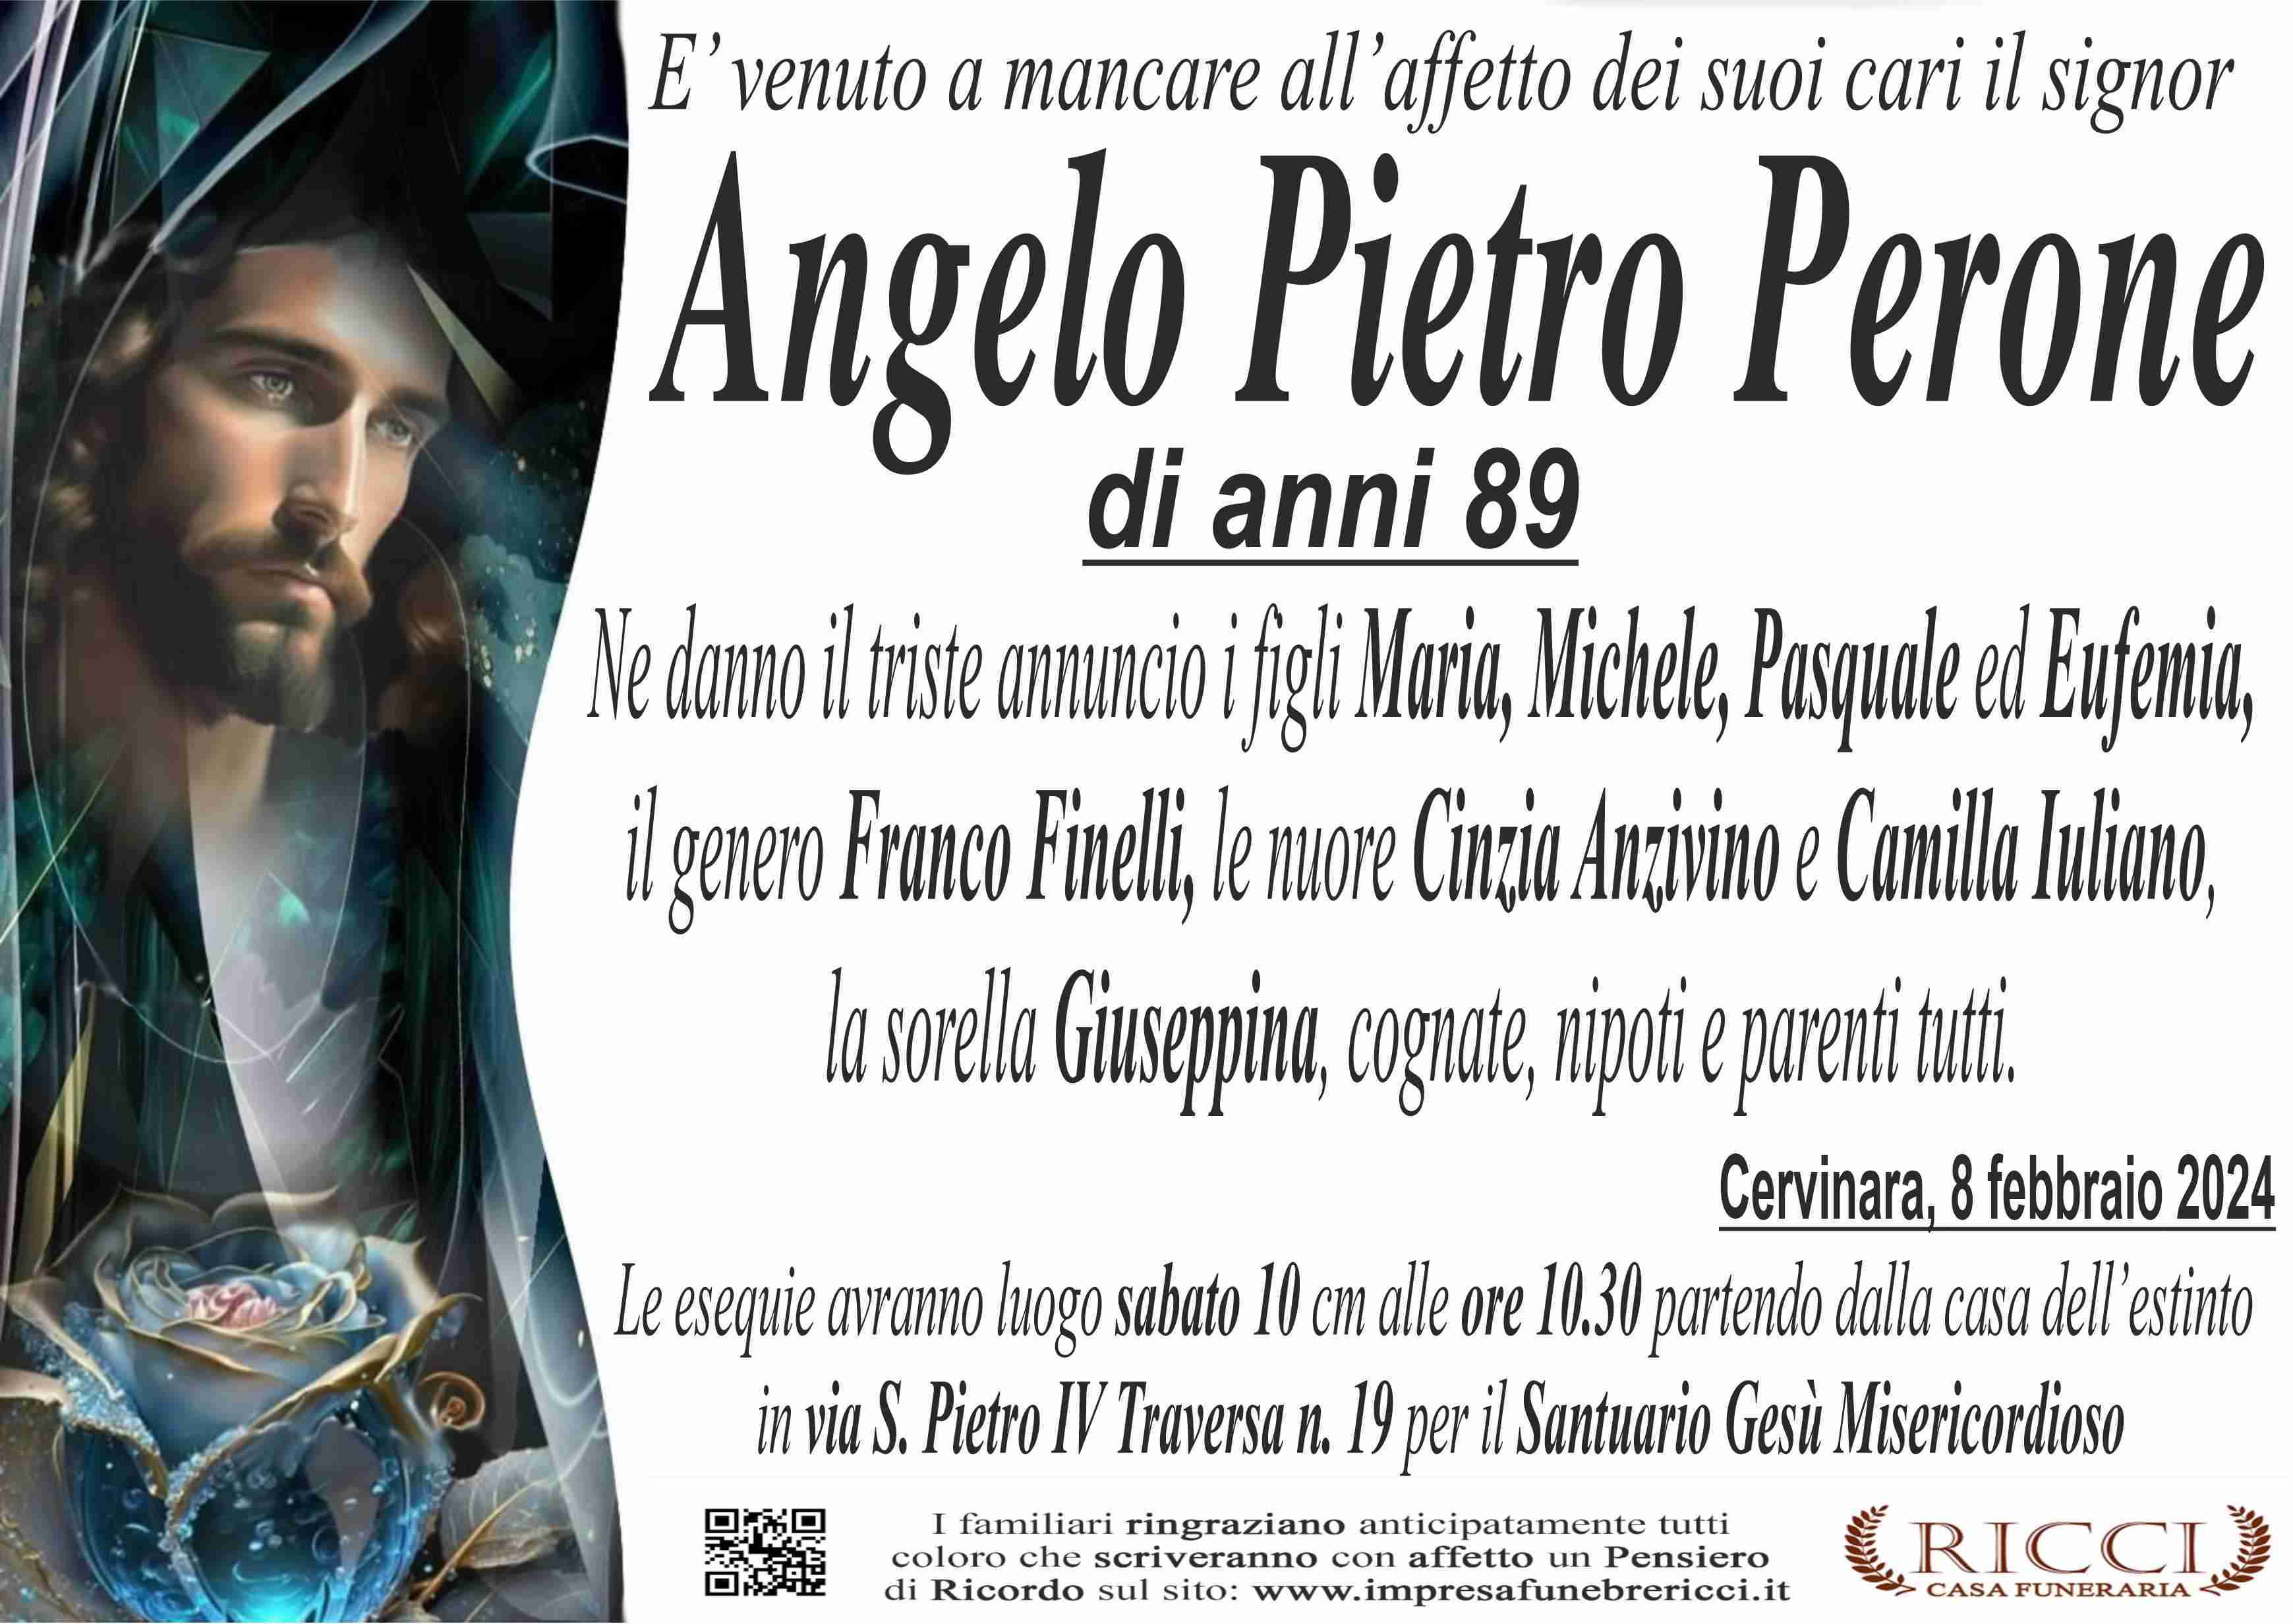 Pietro Angelo Pietro